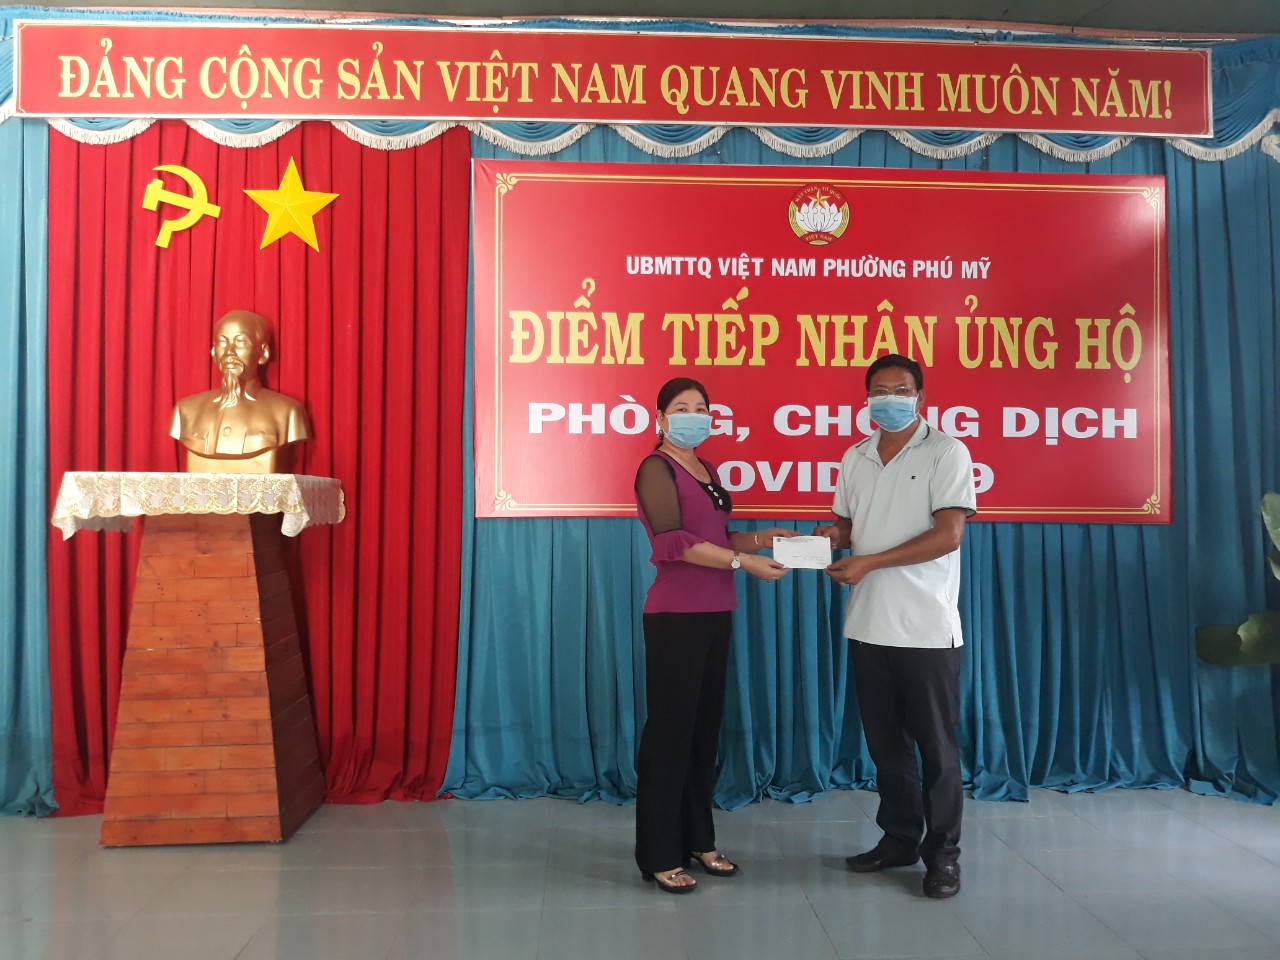 Cô Võ Thị Hà - Chủ tịch công đoàn trường và Ông Huỳnh Tấn Sơn - Chủ tịch ủy ban MTTQ Việt Nam Phường Phú Mỹ nhận đóng góp ủng hộ công tác phòng, chống dịch bệnh COVID-19 tại phường Phú Mỹ